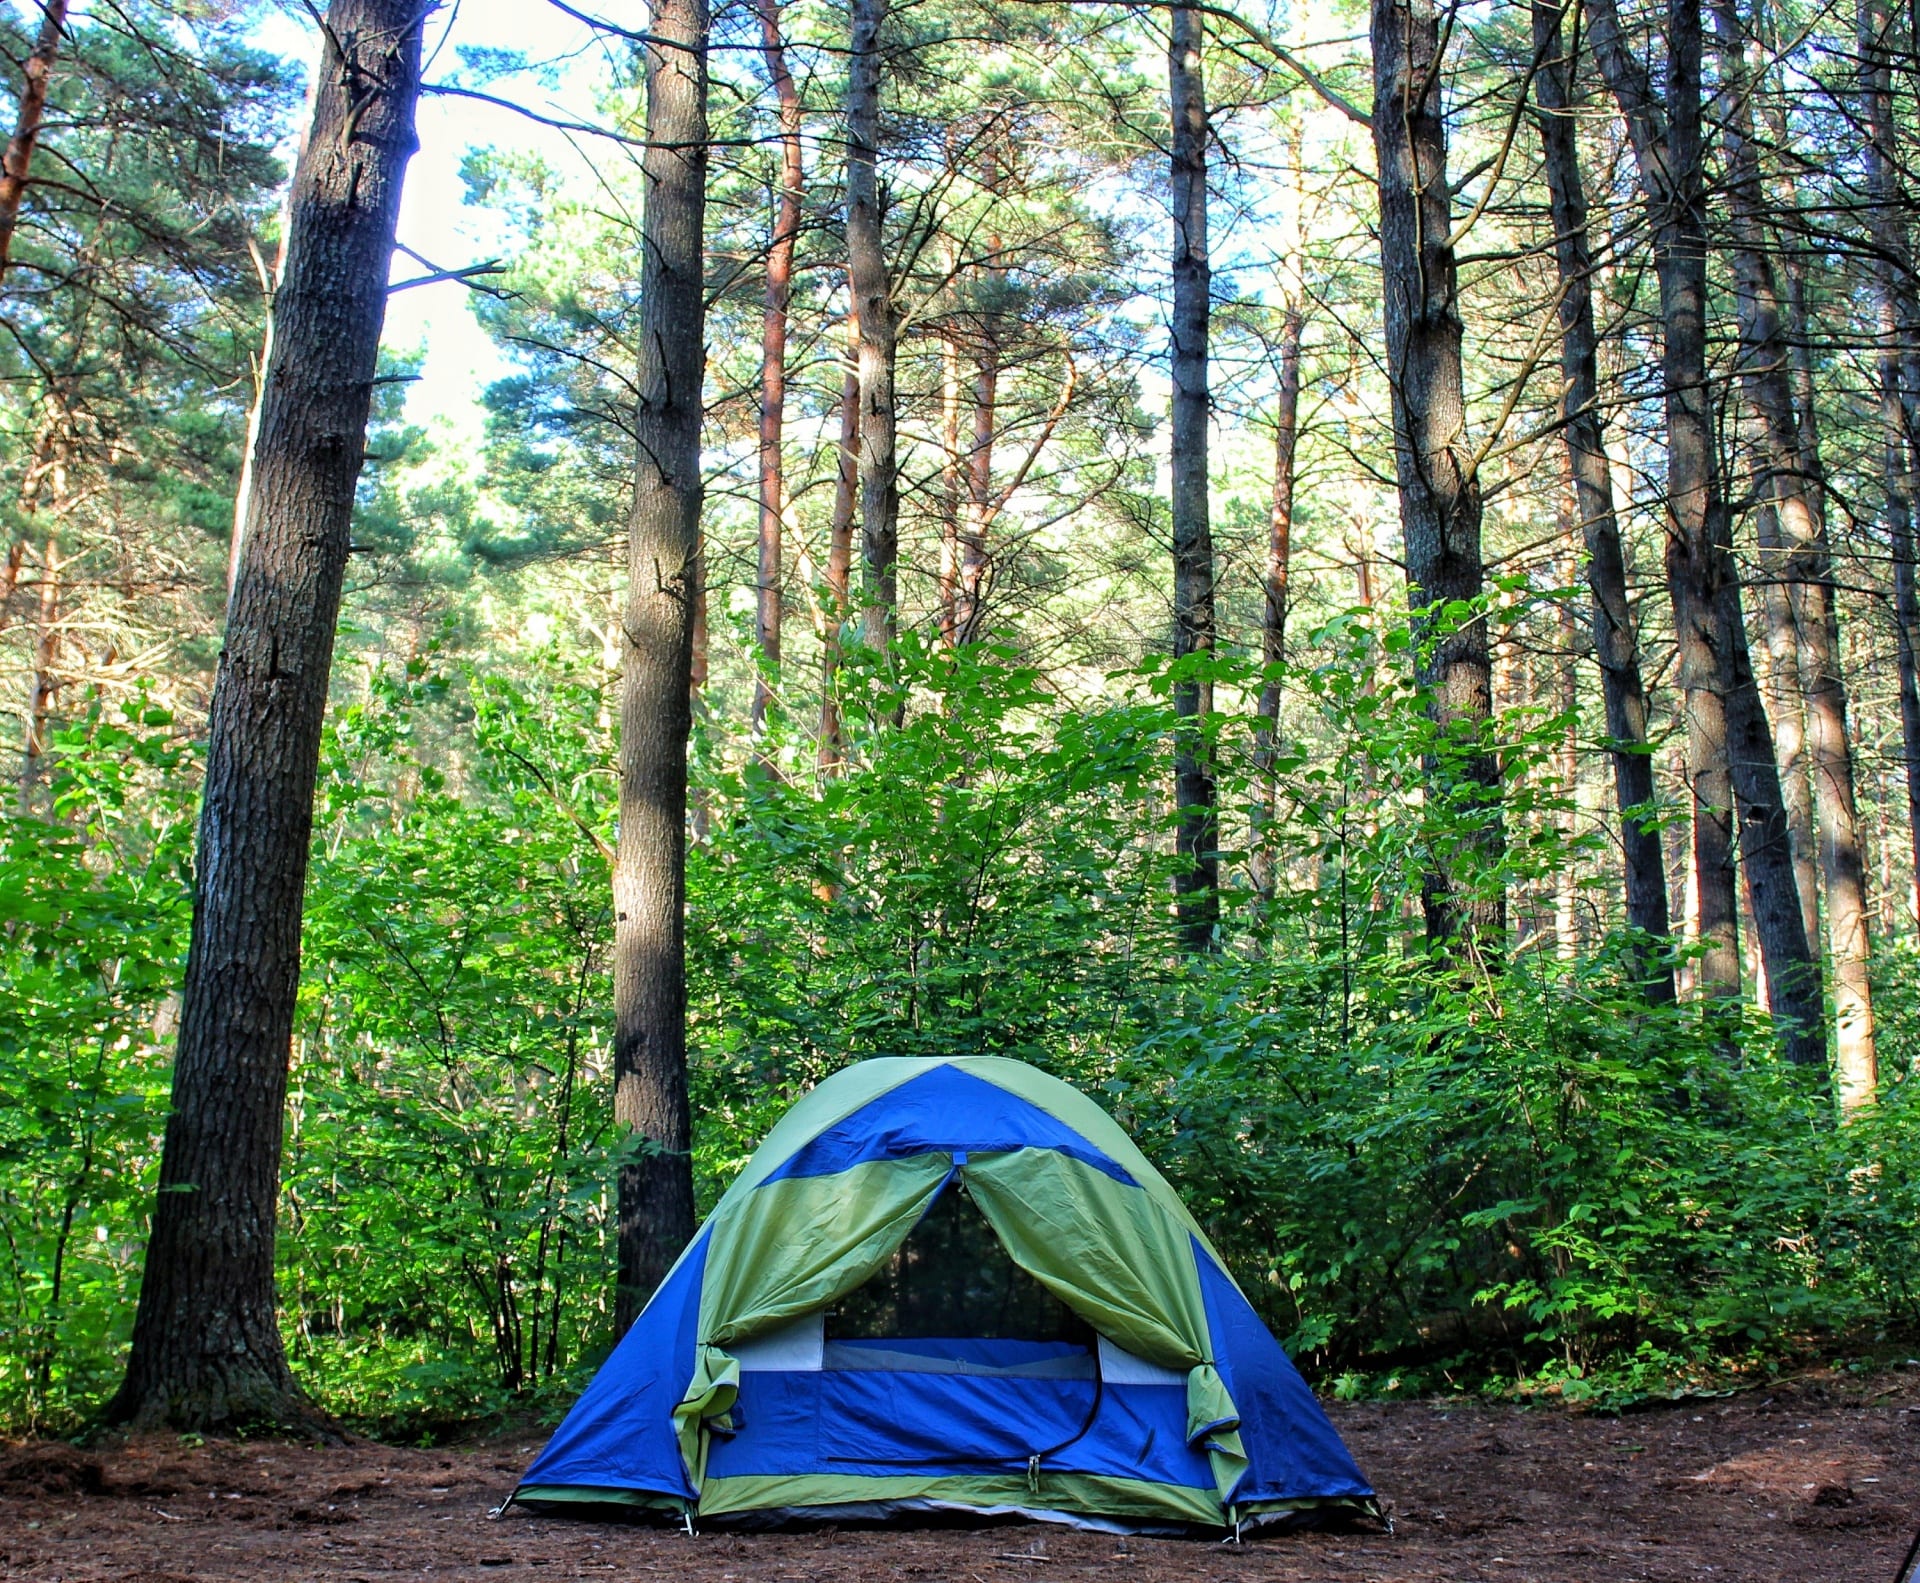 Camping explore. Палаточный лагерь Camp 2050. Селигер палаточный лагерь кемпинг. Палатка в лесу. Туристическая палатка на природе.